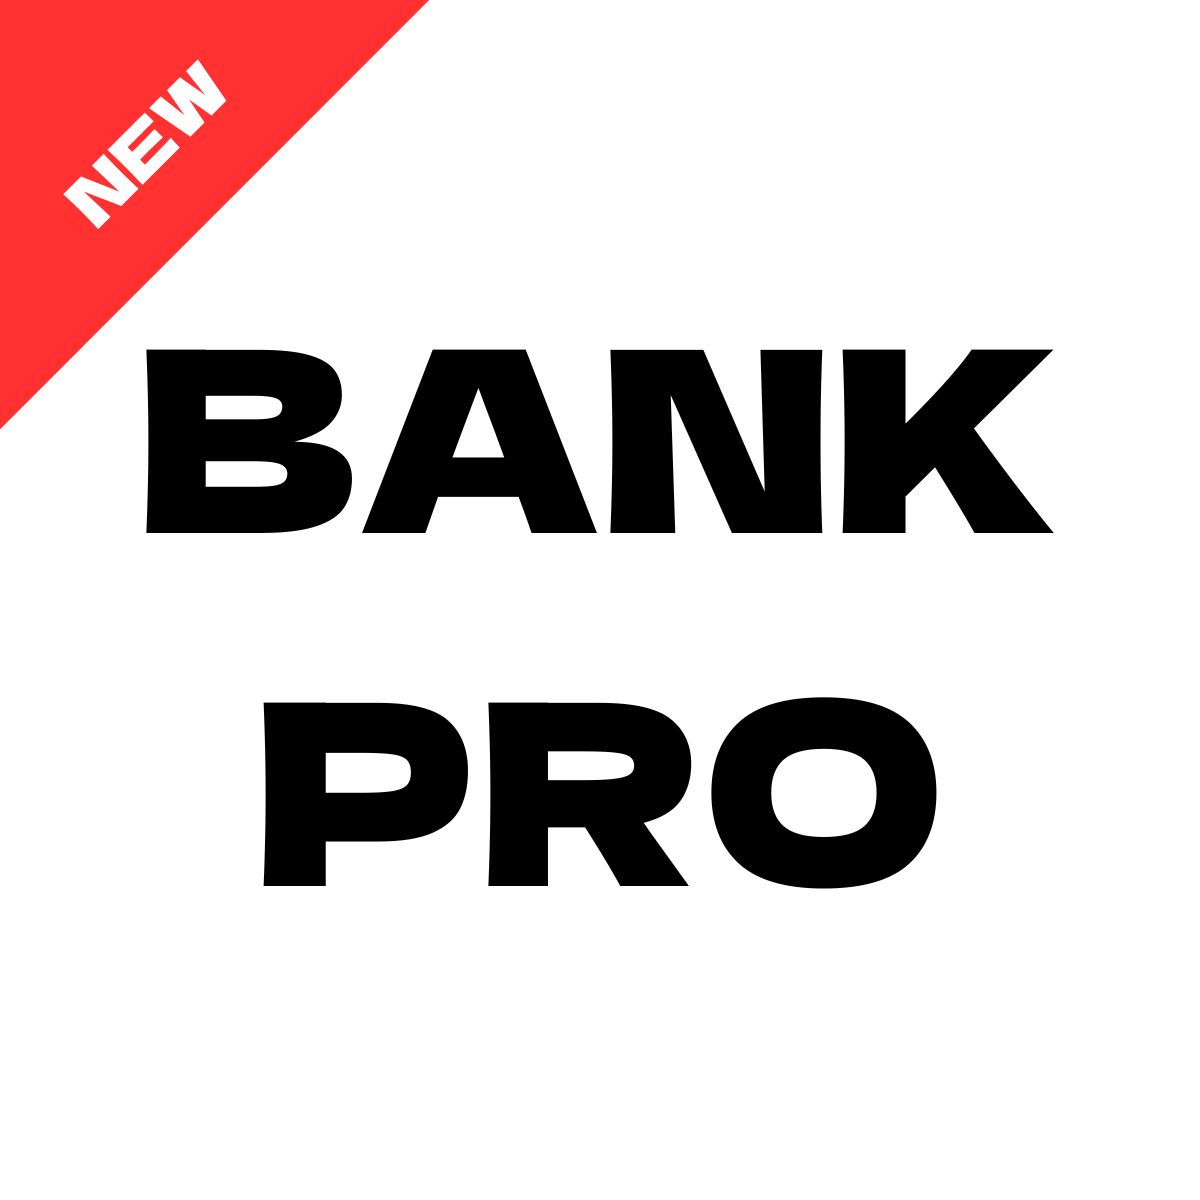 BANK PRO ซื้อขายอัตโนมัติ